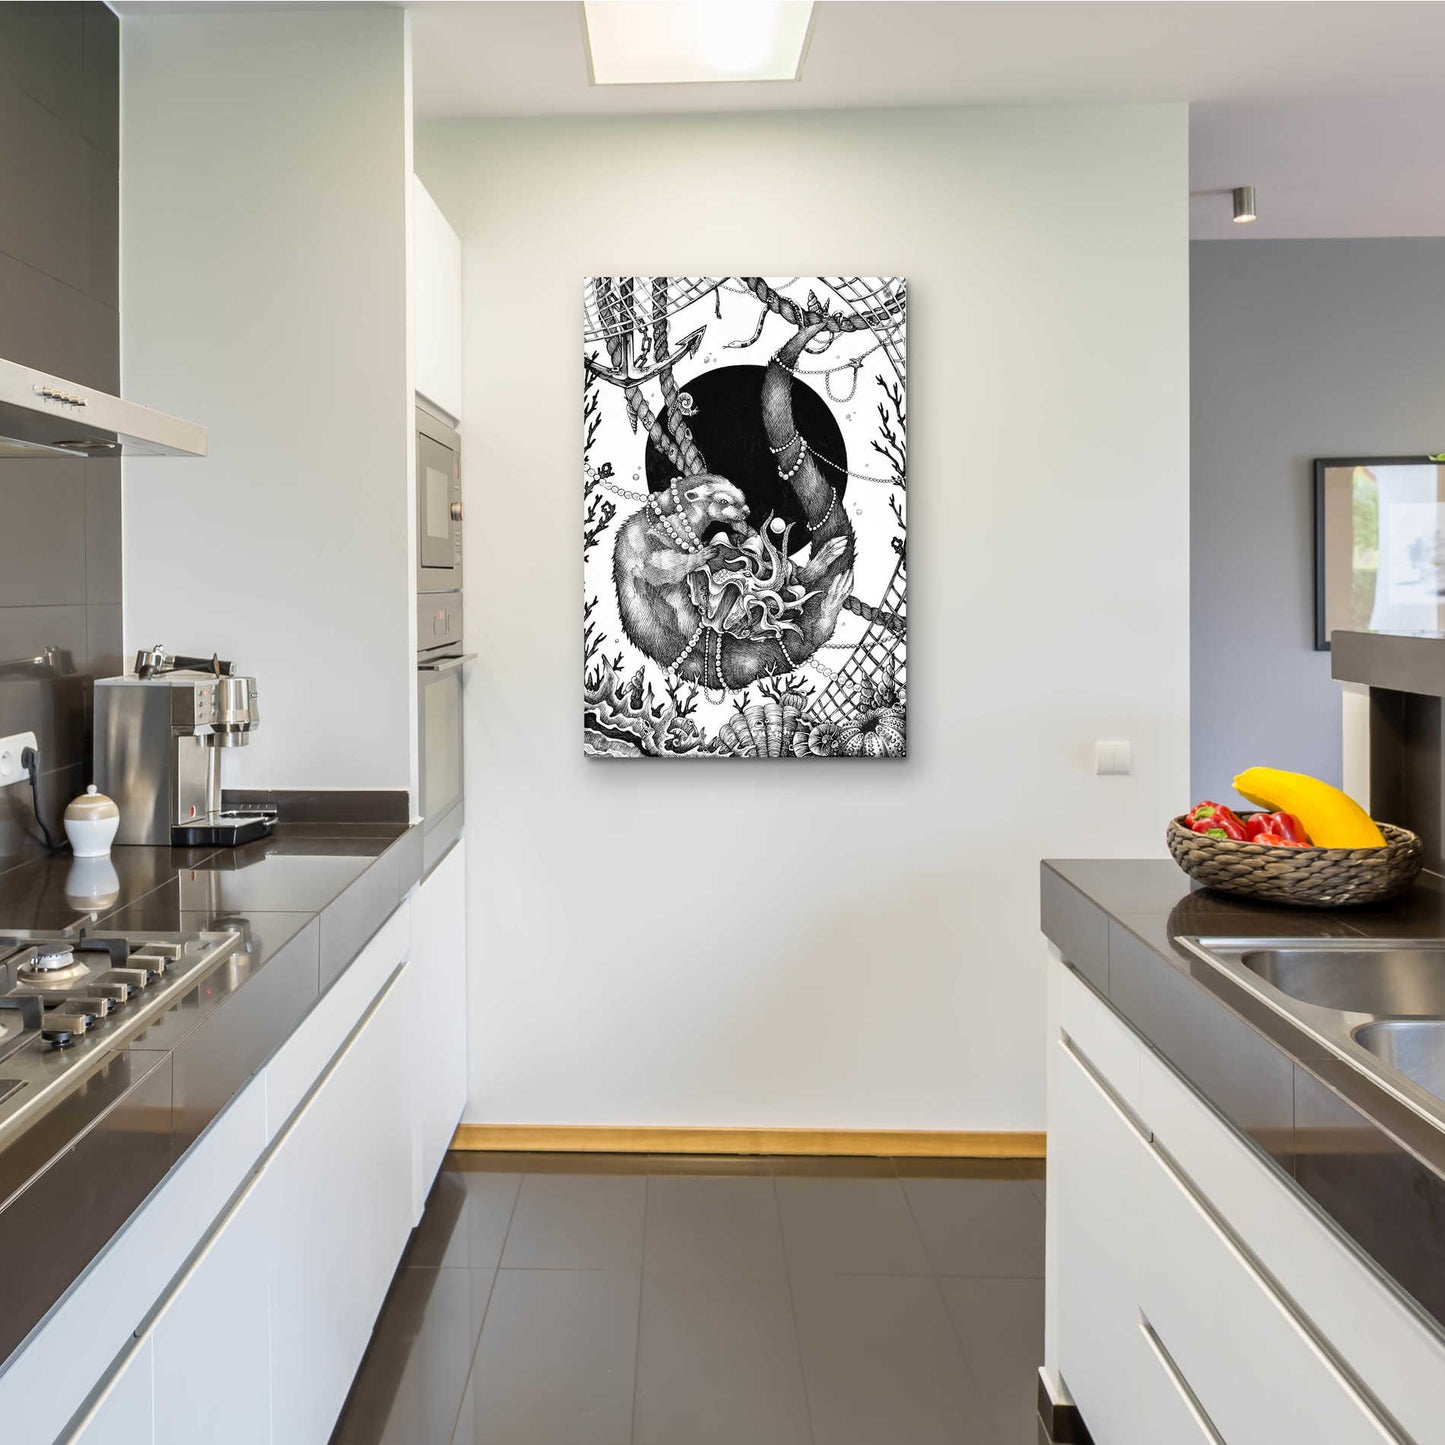 Epic Art 'Otter' by Avery Multer, Acrylic Glass Wall Art,24x36